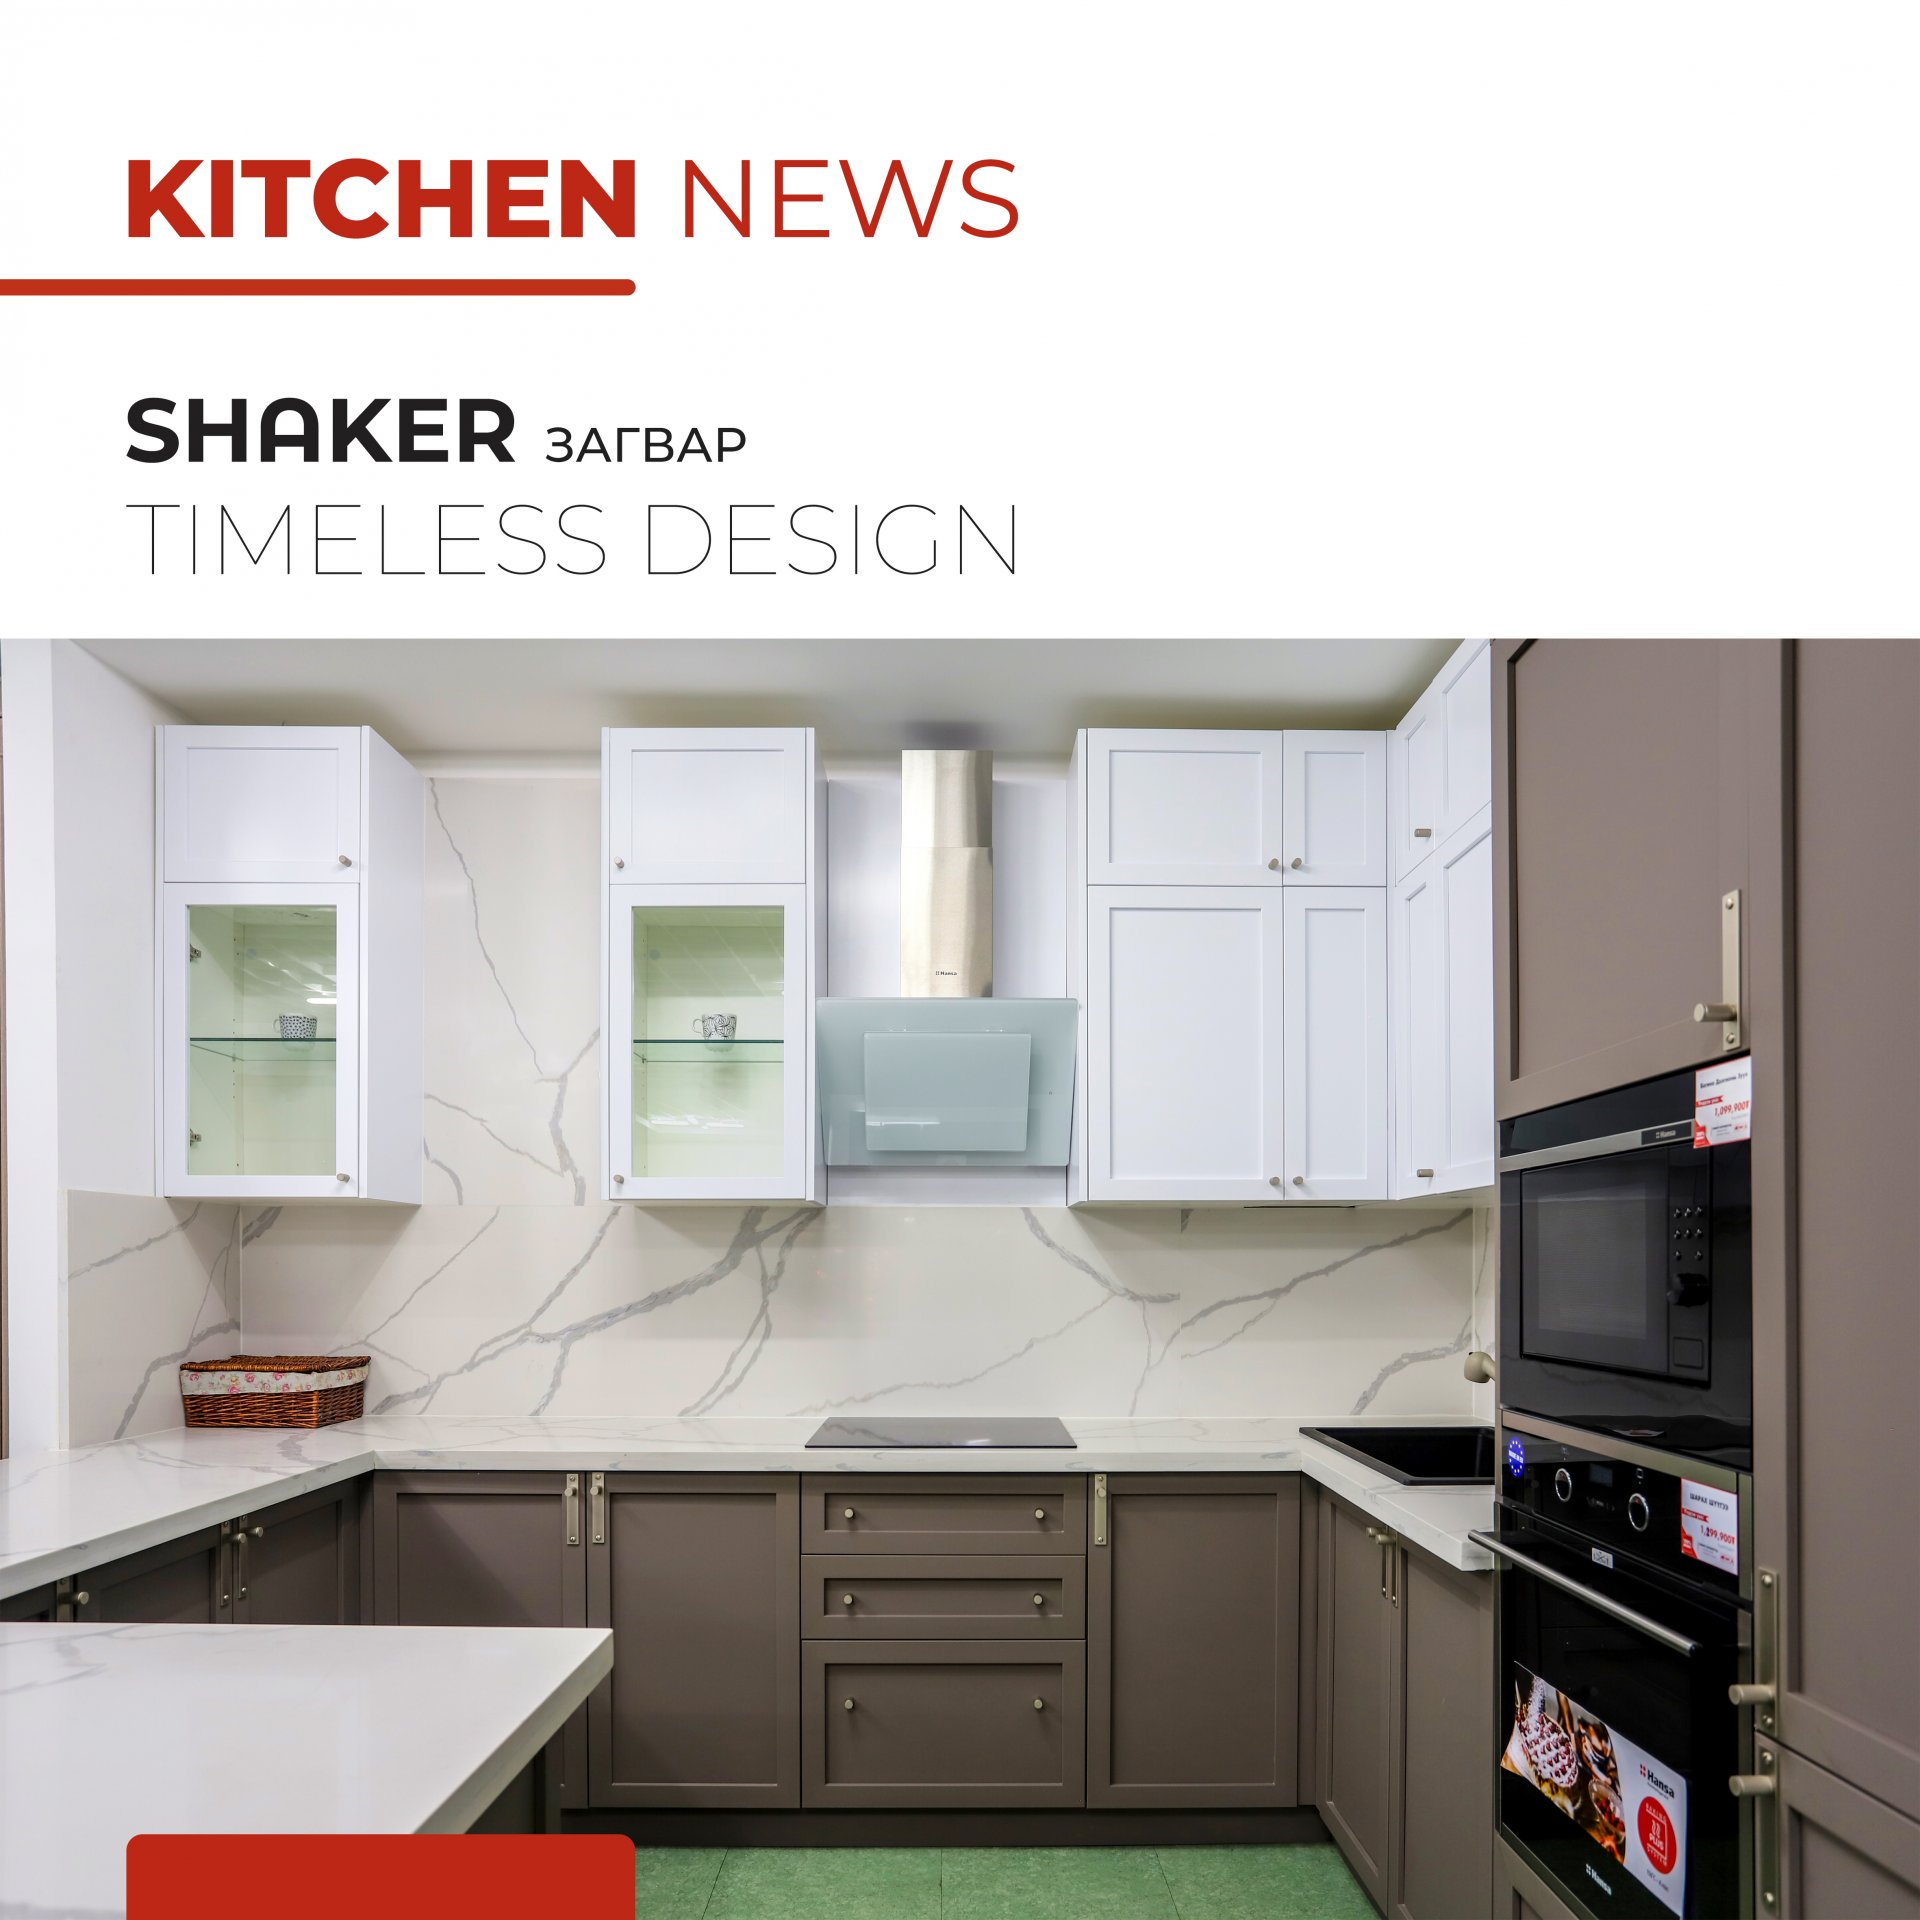 #kitchen News - Shaker 